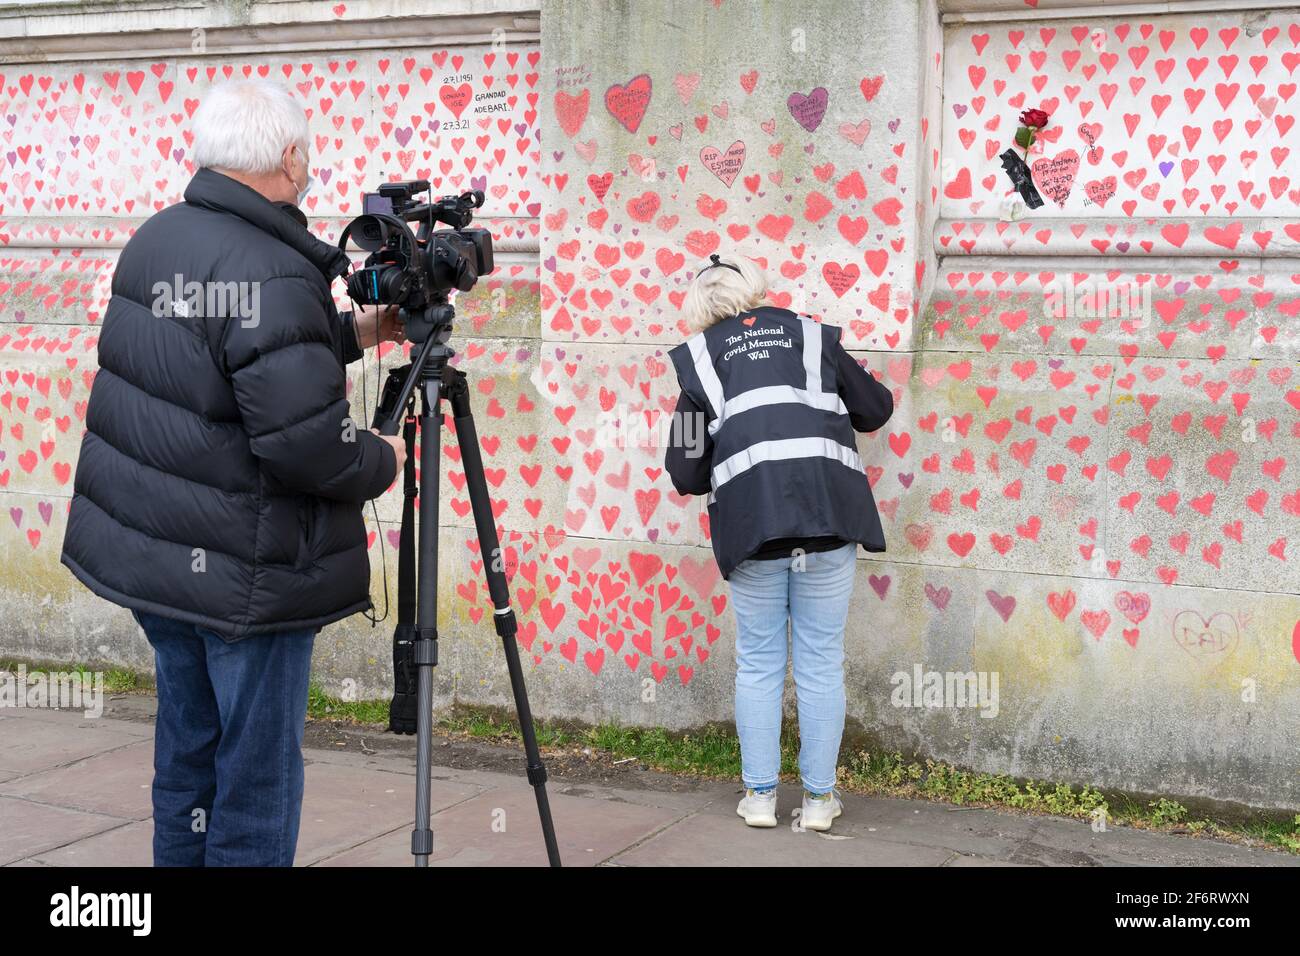 TV media equipe filmare volontario pittura cuore rosso sul muro commemorativo del covid nazionale, Londra South Bank , sull'Embankment, Inghilterra Foto Stock